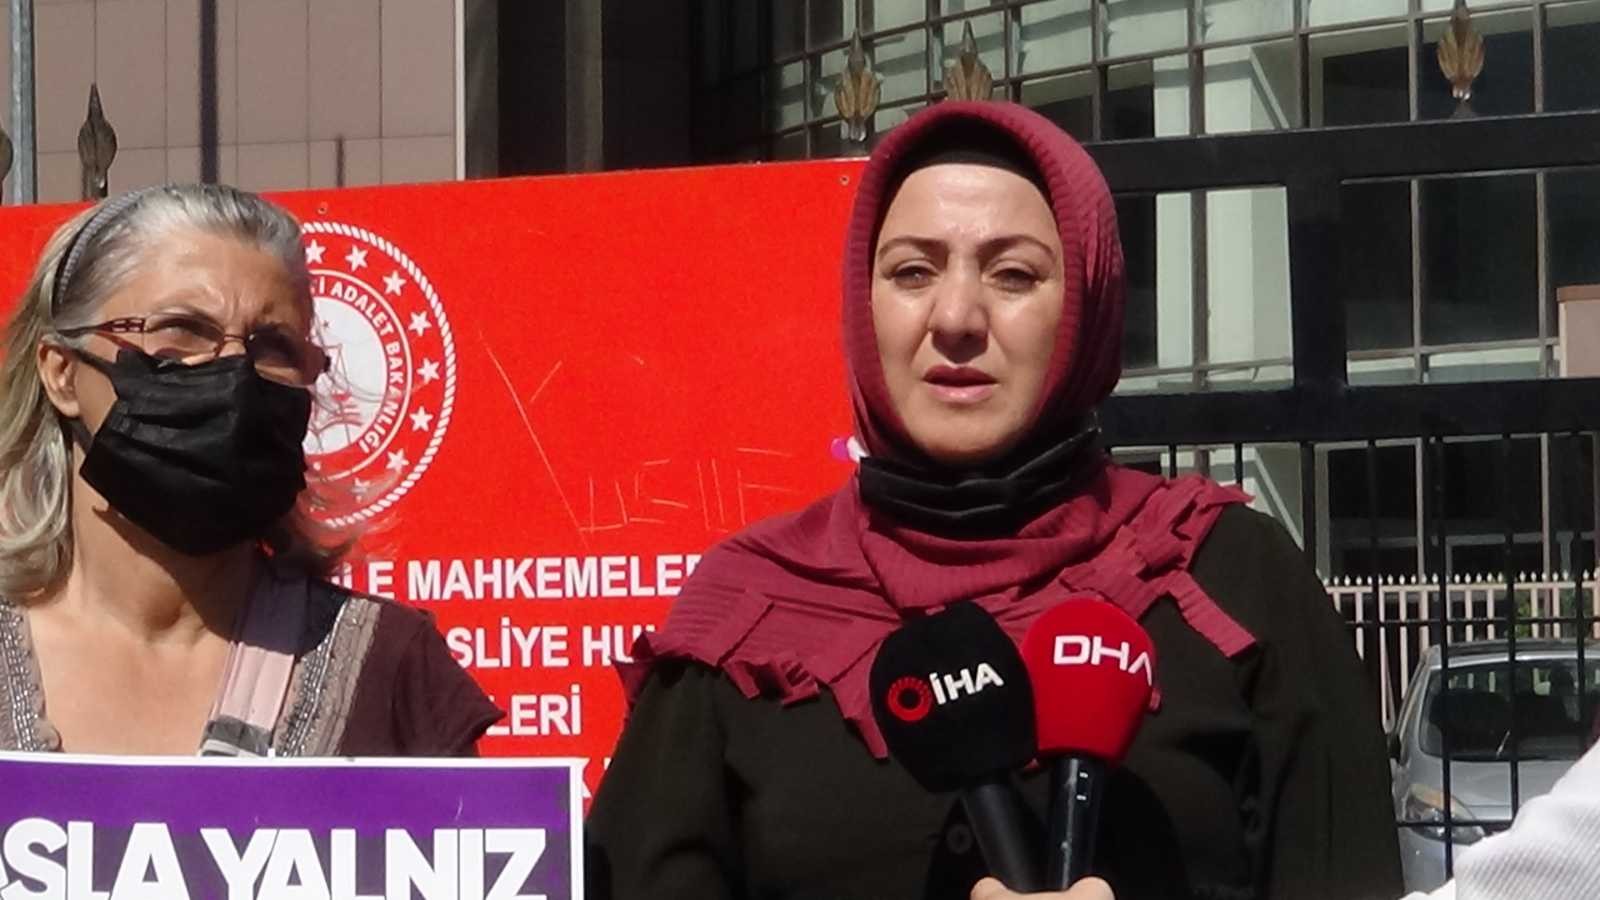 Zeytinburnu’nda eşini silah ile yaralayan sanık hakkında mütalaa açıklandı #istanbul